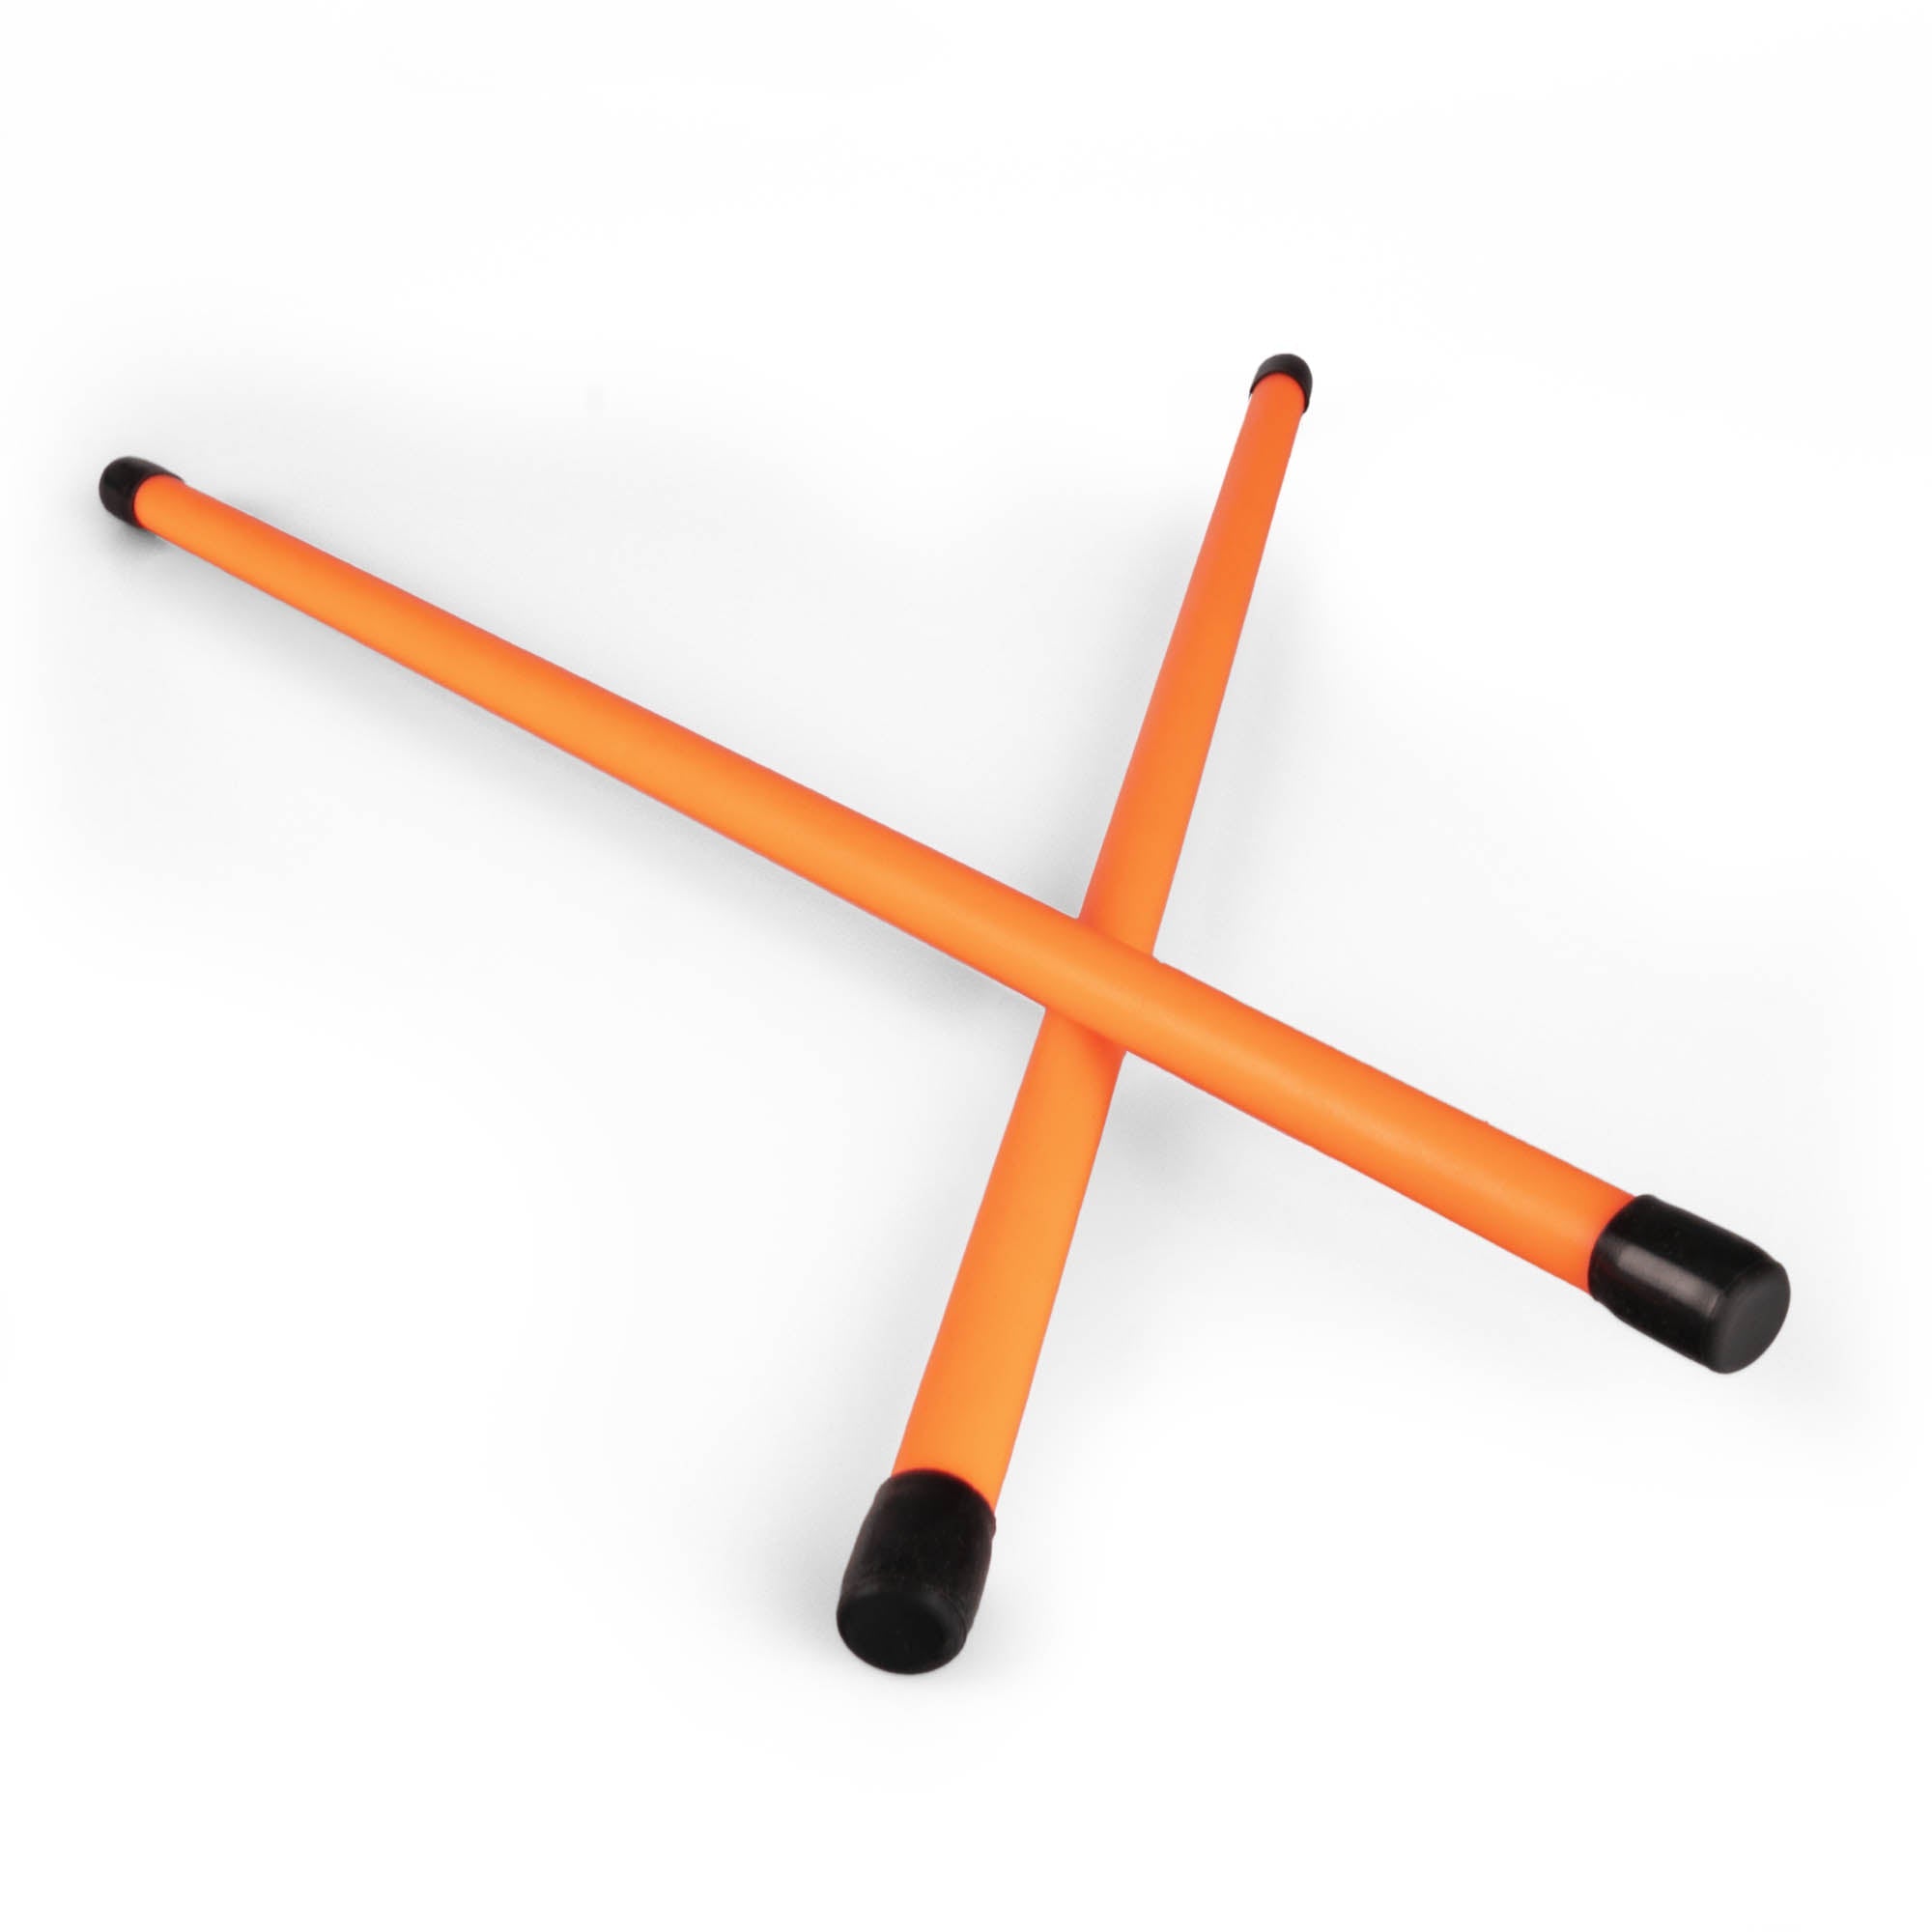 A pair of orange devilstick handsticks crossed over